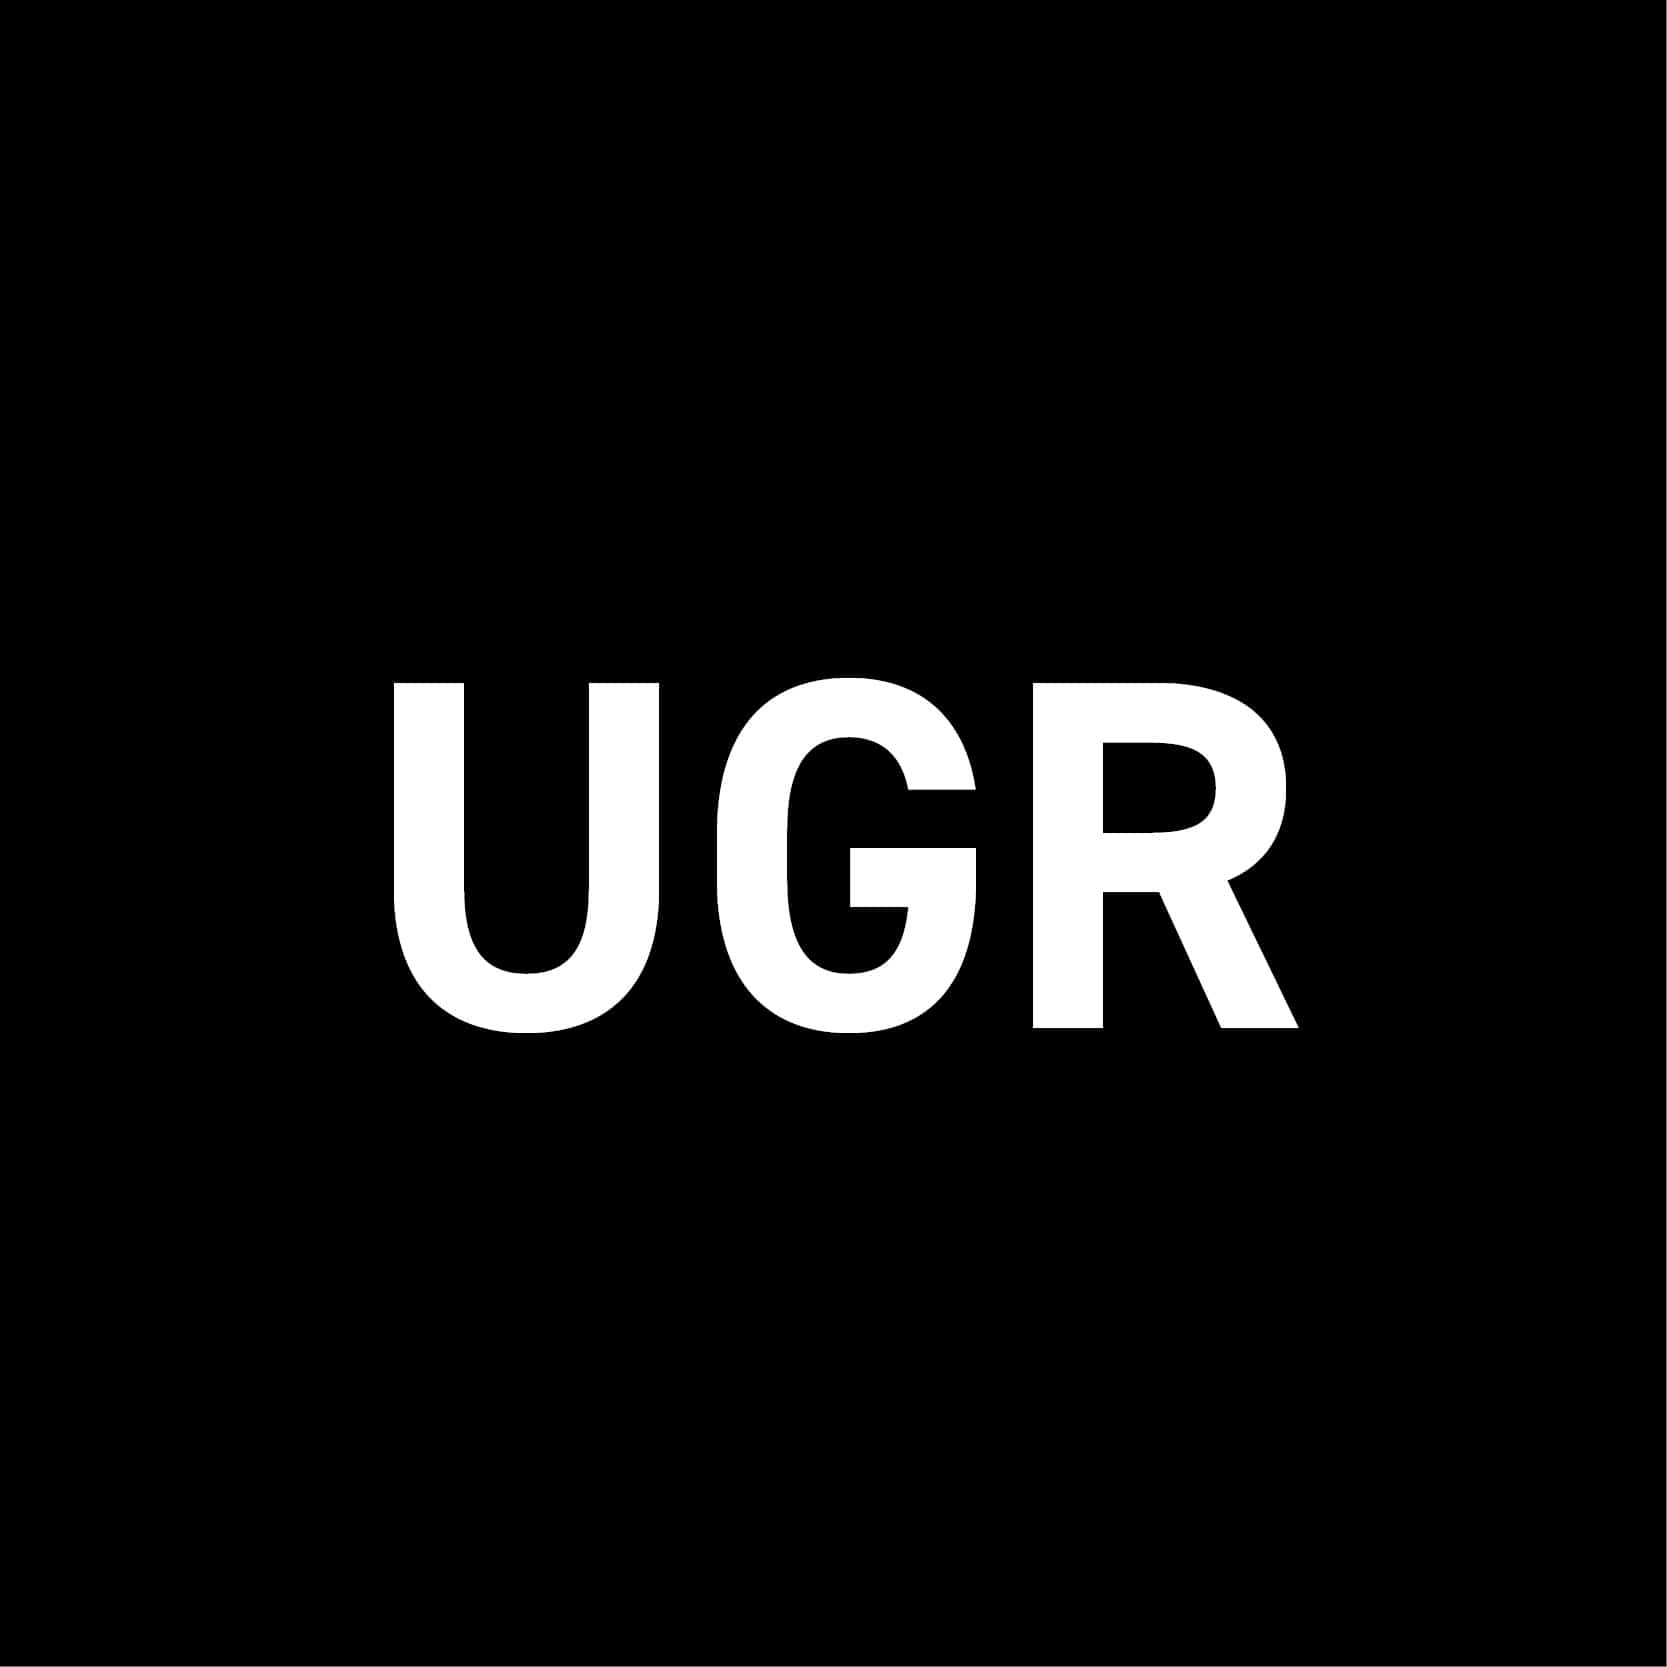 Unified Glare Rating / UGR